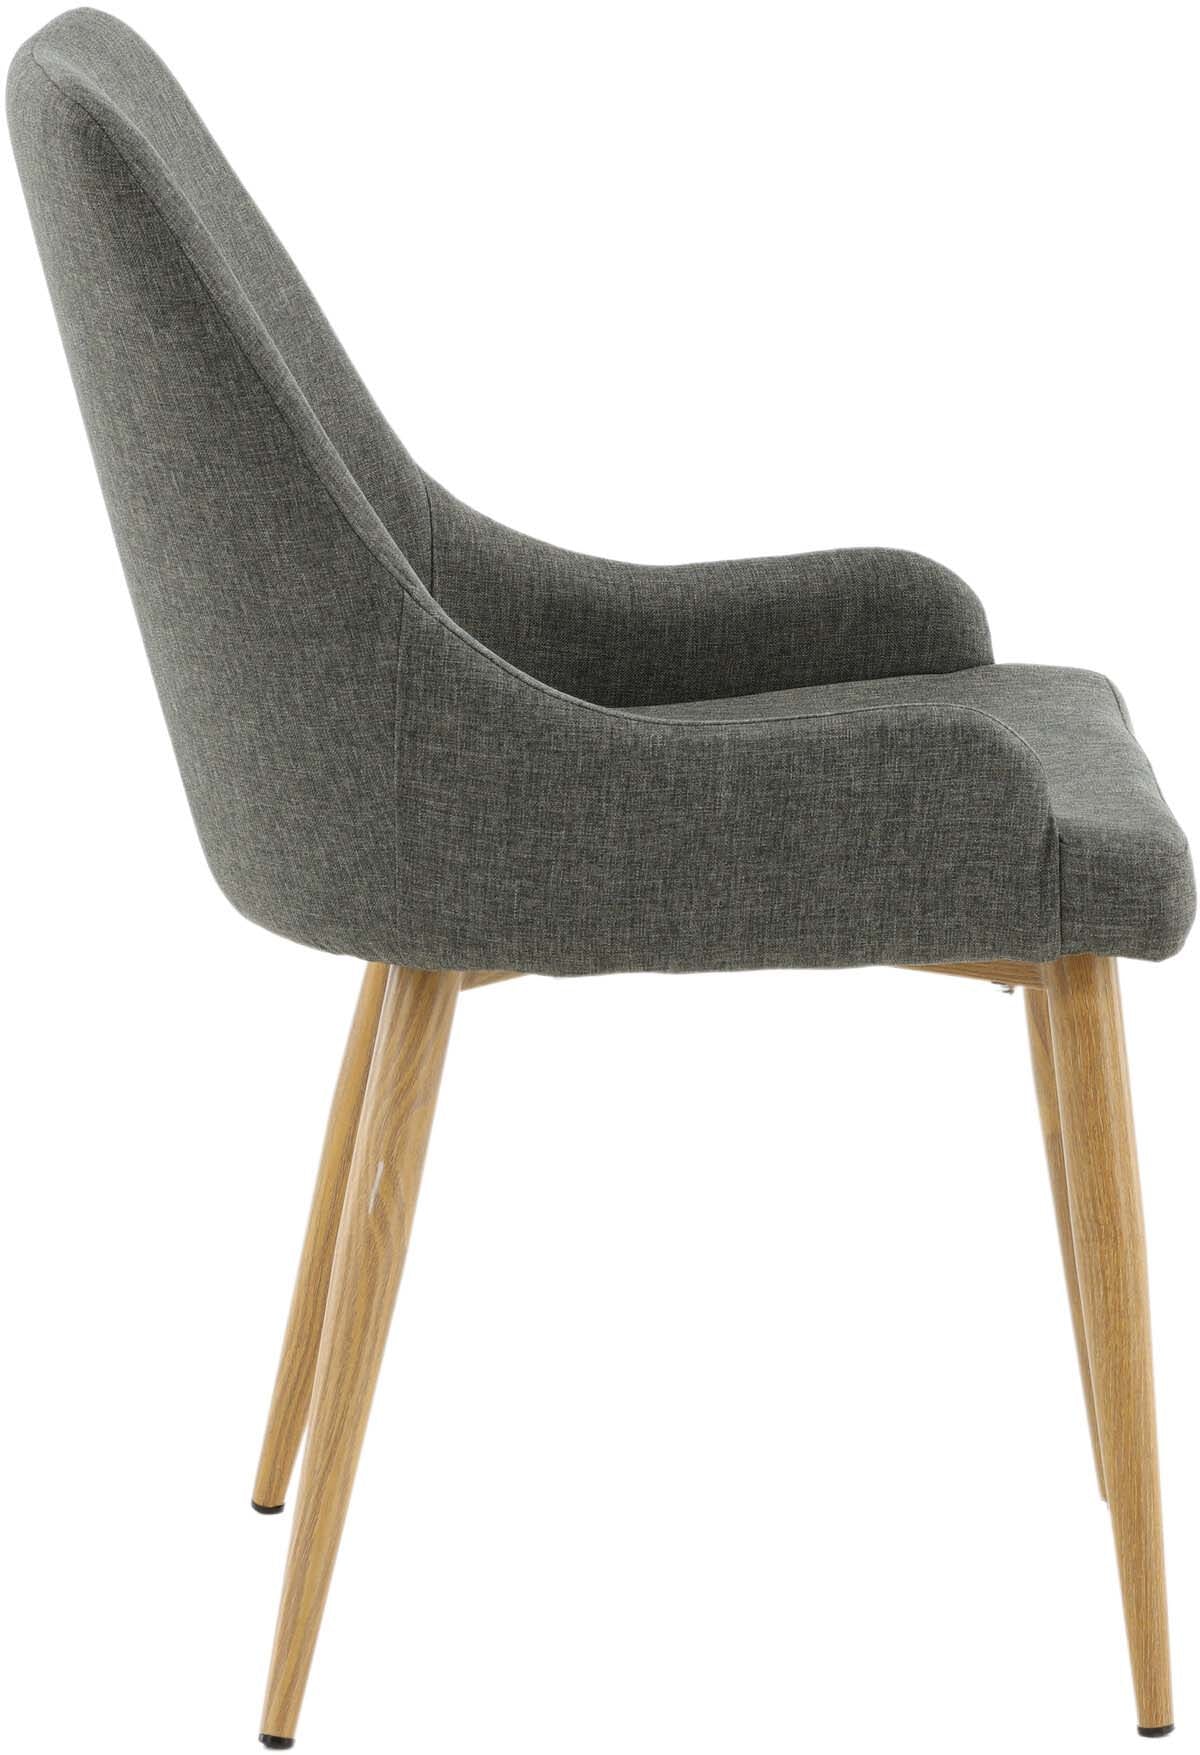 Plaza Stuhl in Dunkelgrau / Natur präsentiert im Onlineshop von KAQTU Design AG. Stuhl ist von Venture Home